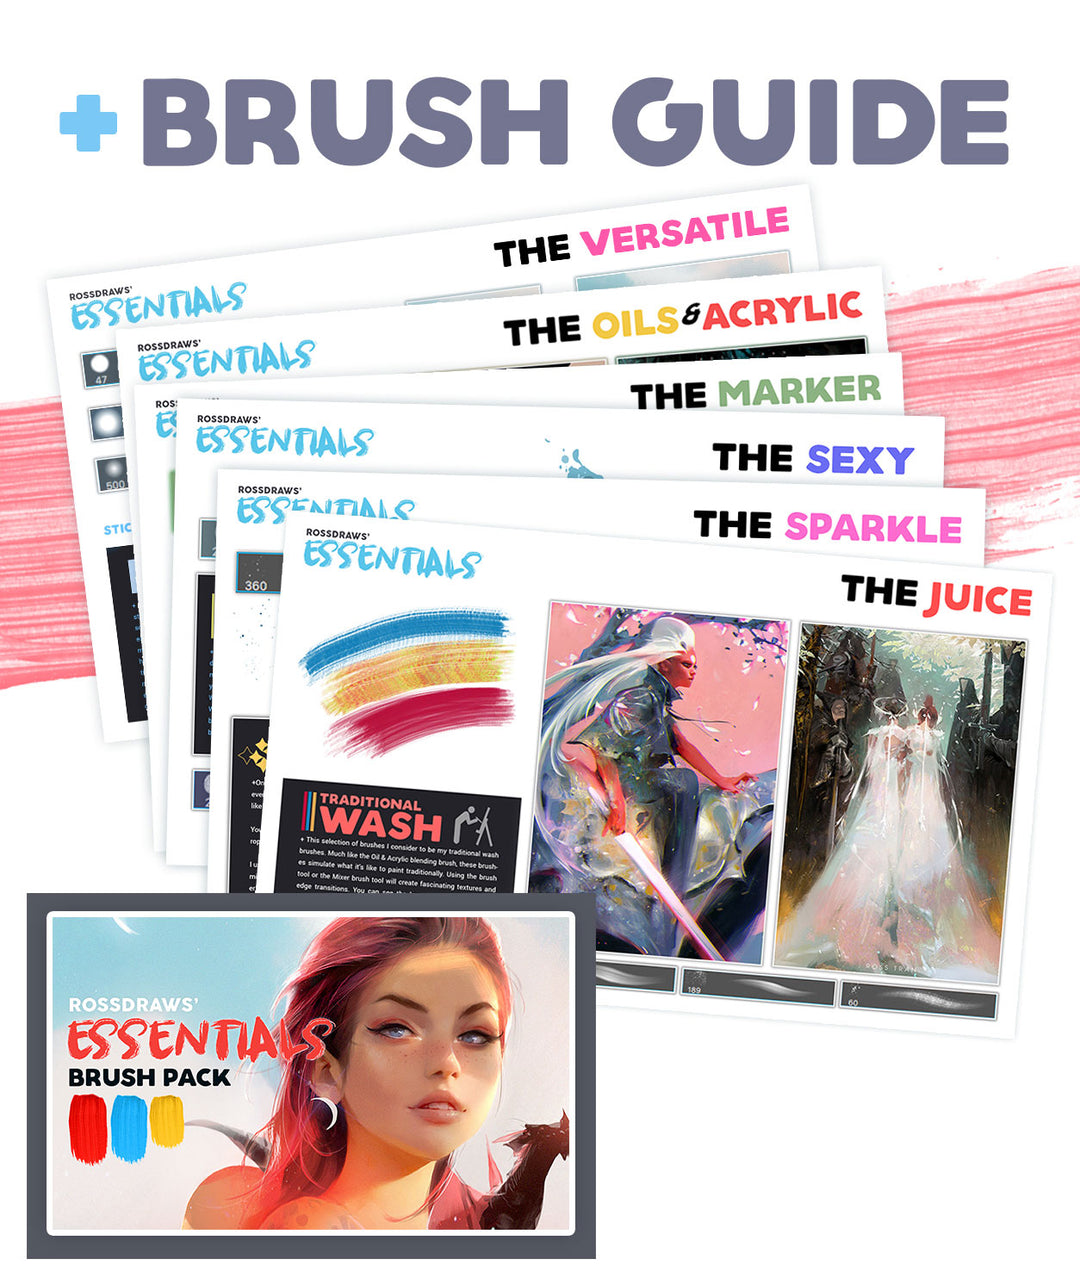 Rossdraws' Essentials Brush Pack